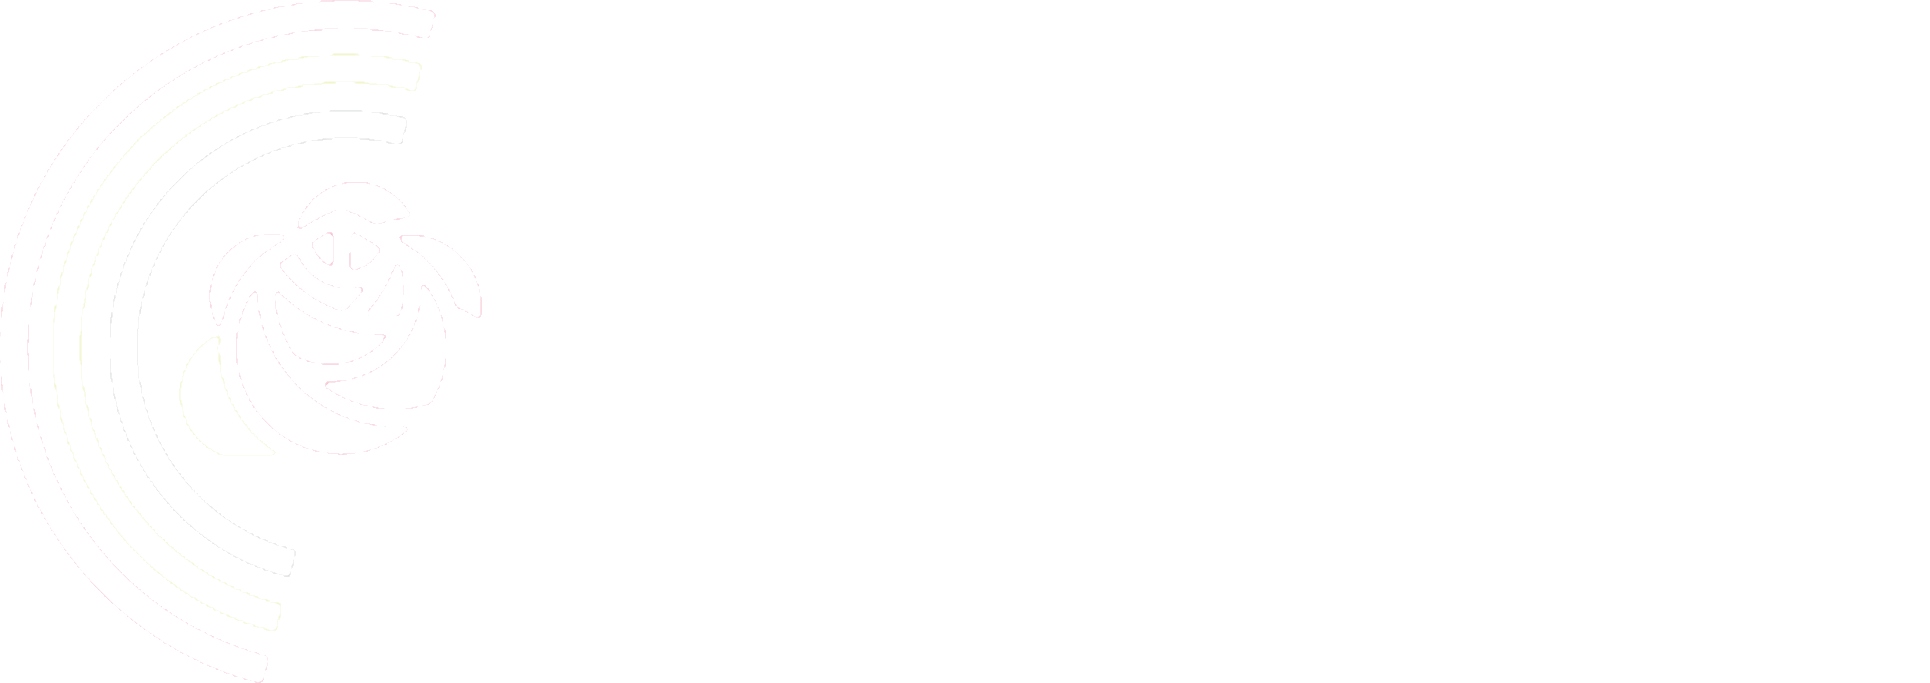 한인사회당 로고.png